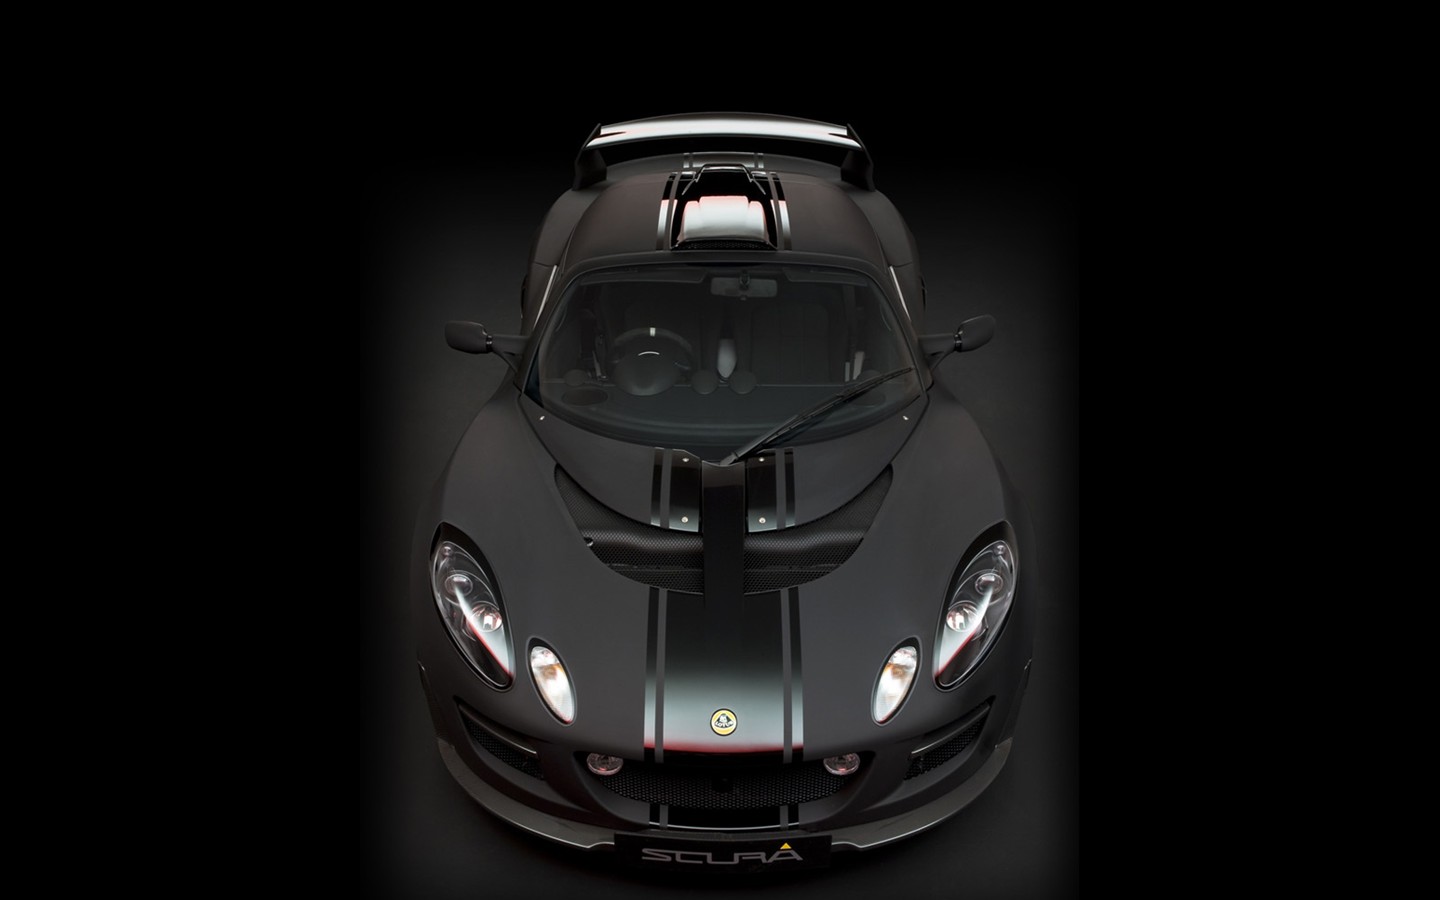 2010 Lotus-Sportwagen in limitierter Auflage Tapete #6 - 1440x900